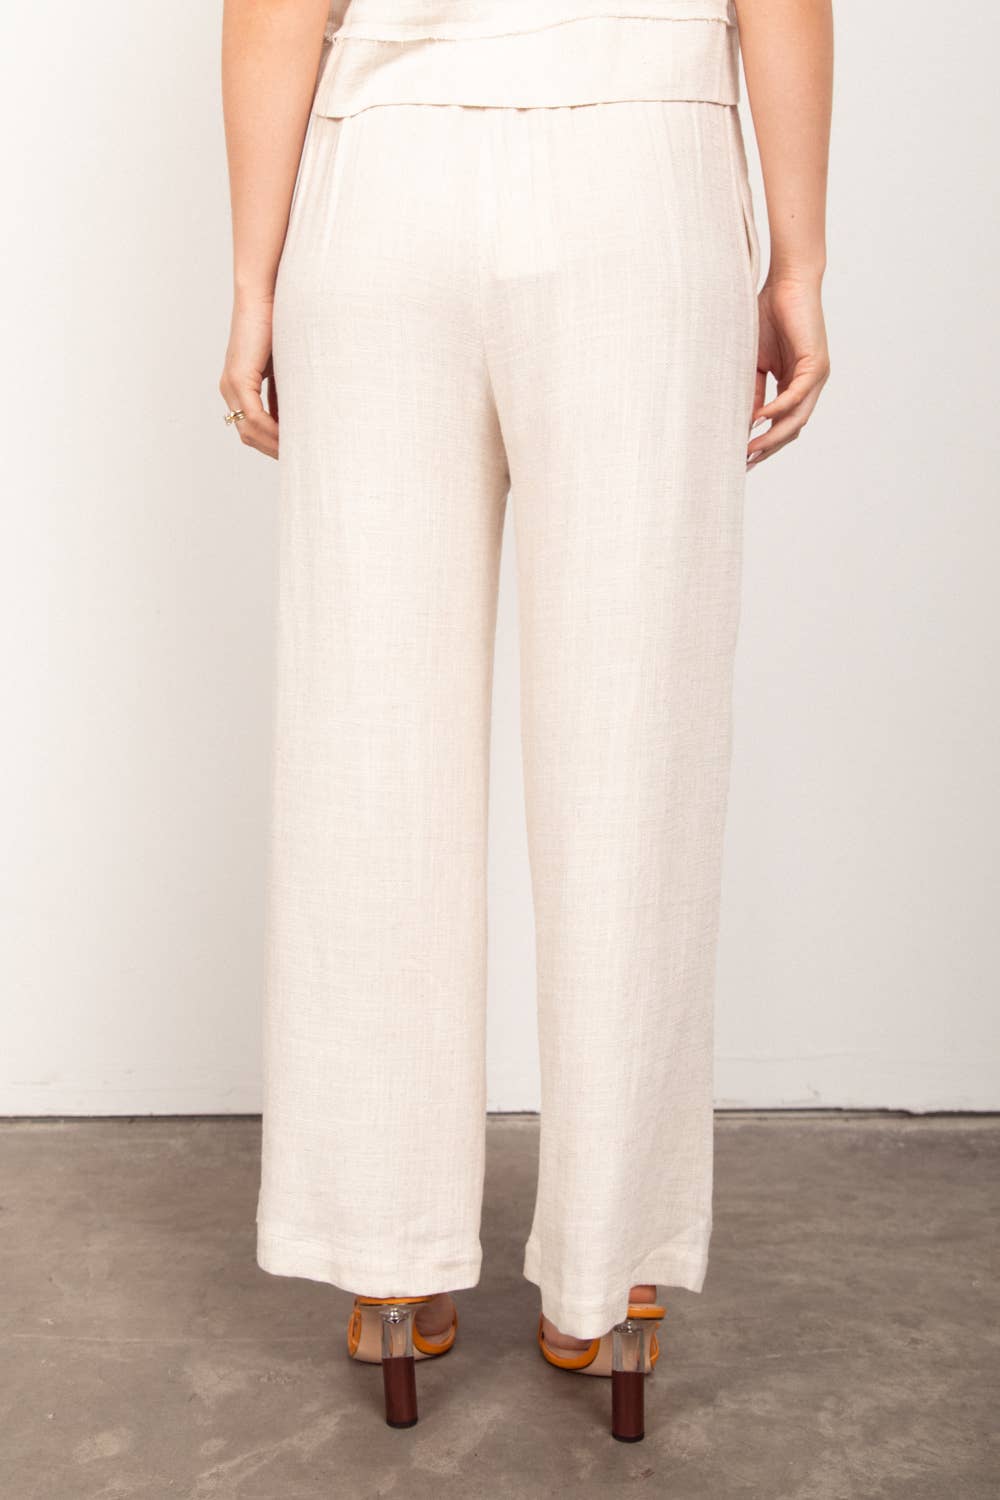 Solid Woven Linen Sleeveless Top & Pants Set - OATMEAL